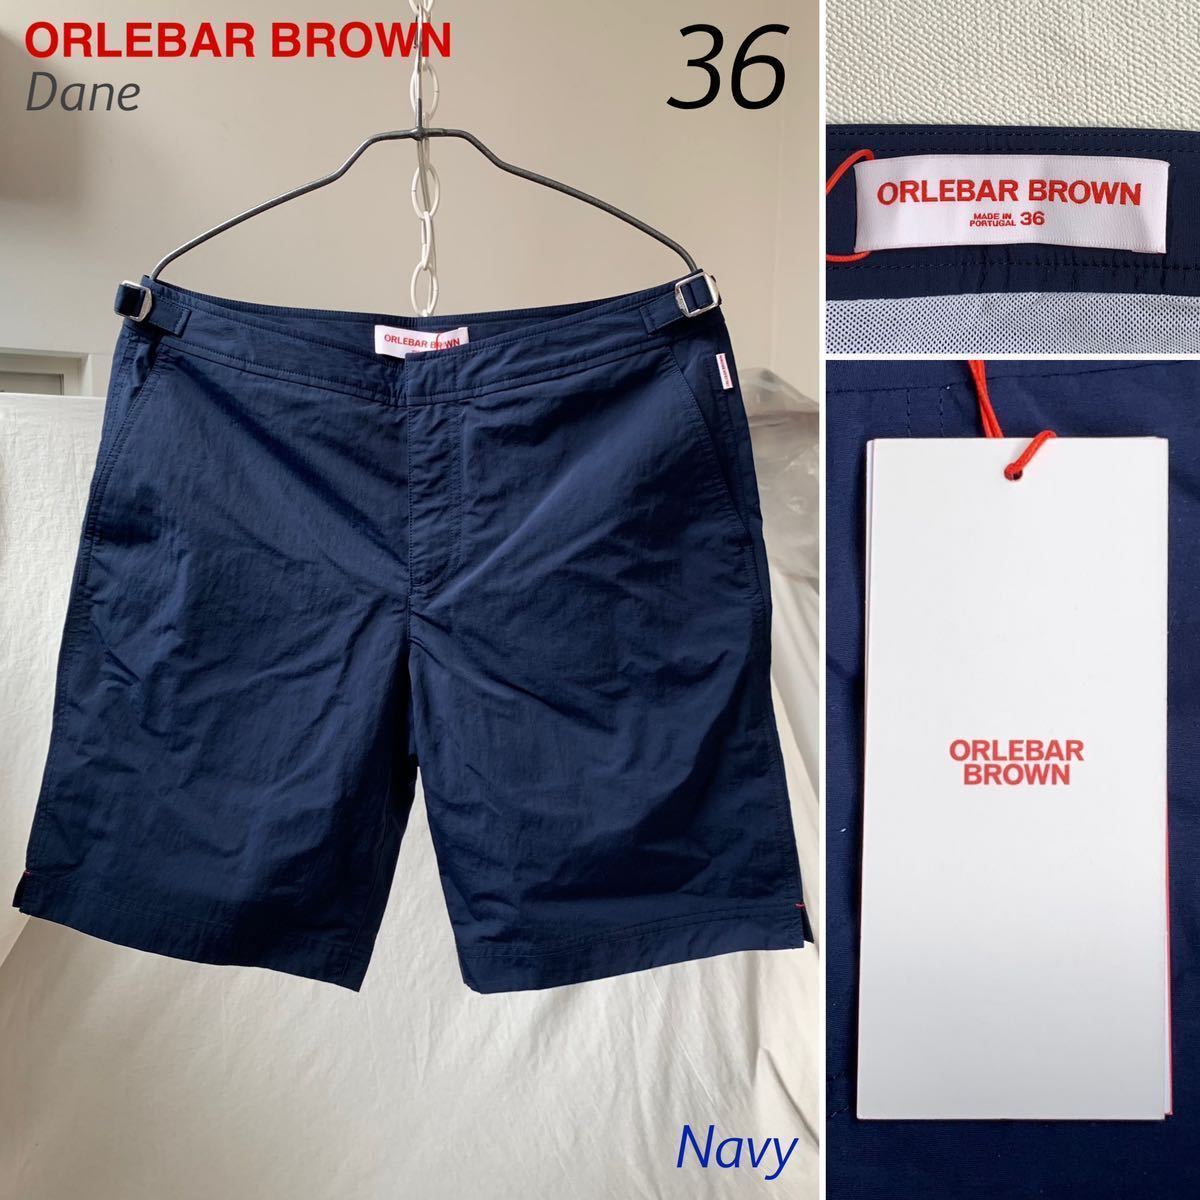 新品 ORLEBAR BROWN オールバー ブラウン Dane ロング丈 スイム パンツ36 水着 007 ショーツ ネイビー 収納袋付 ブルドッグのロングモデル